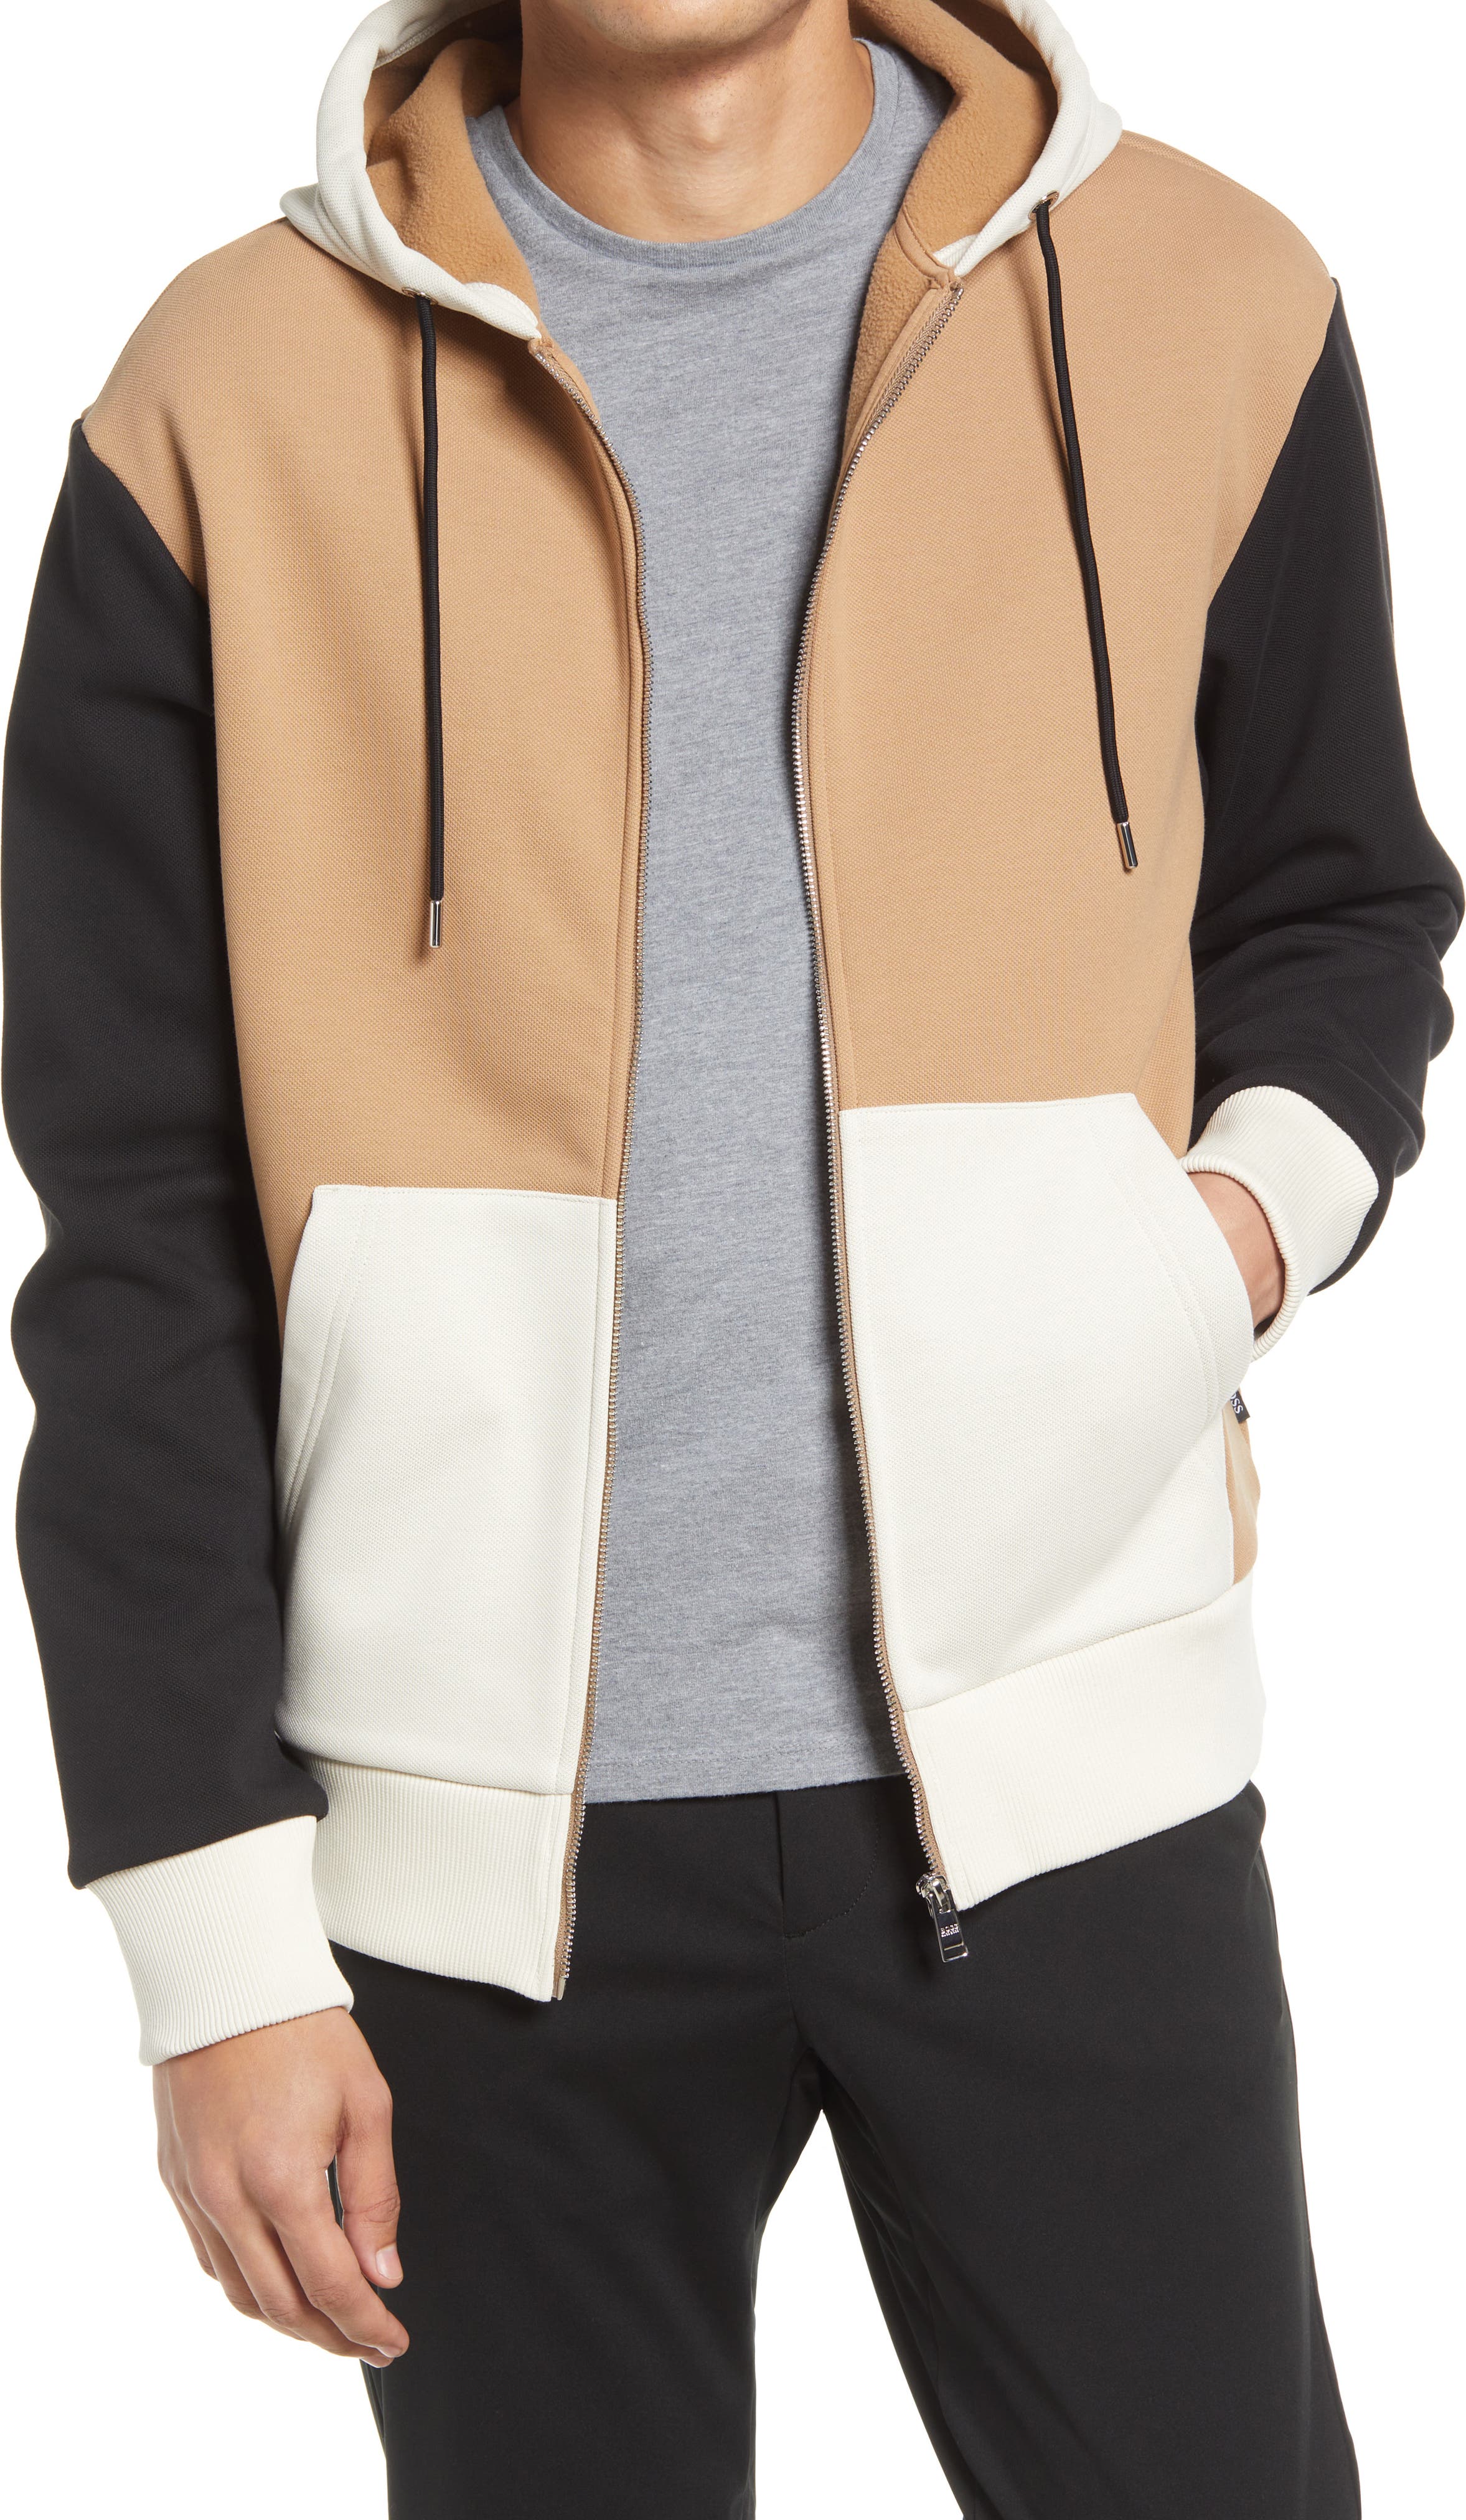 X-Future Men Zip Up Color Block Slim Casual Active Hooded Sweatshirt 